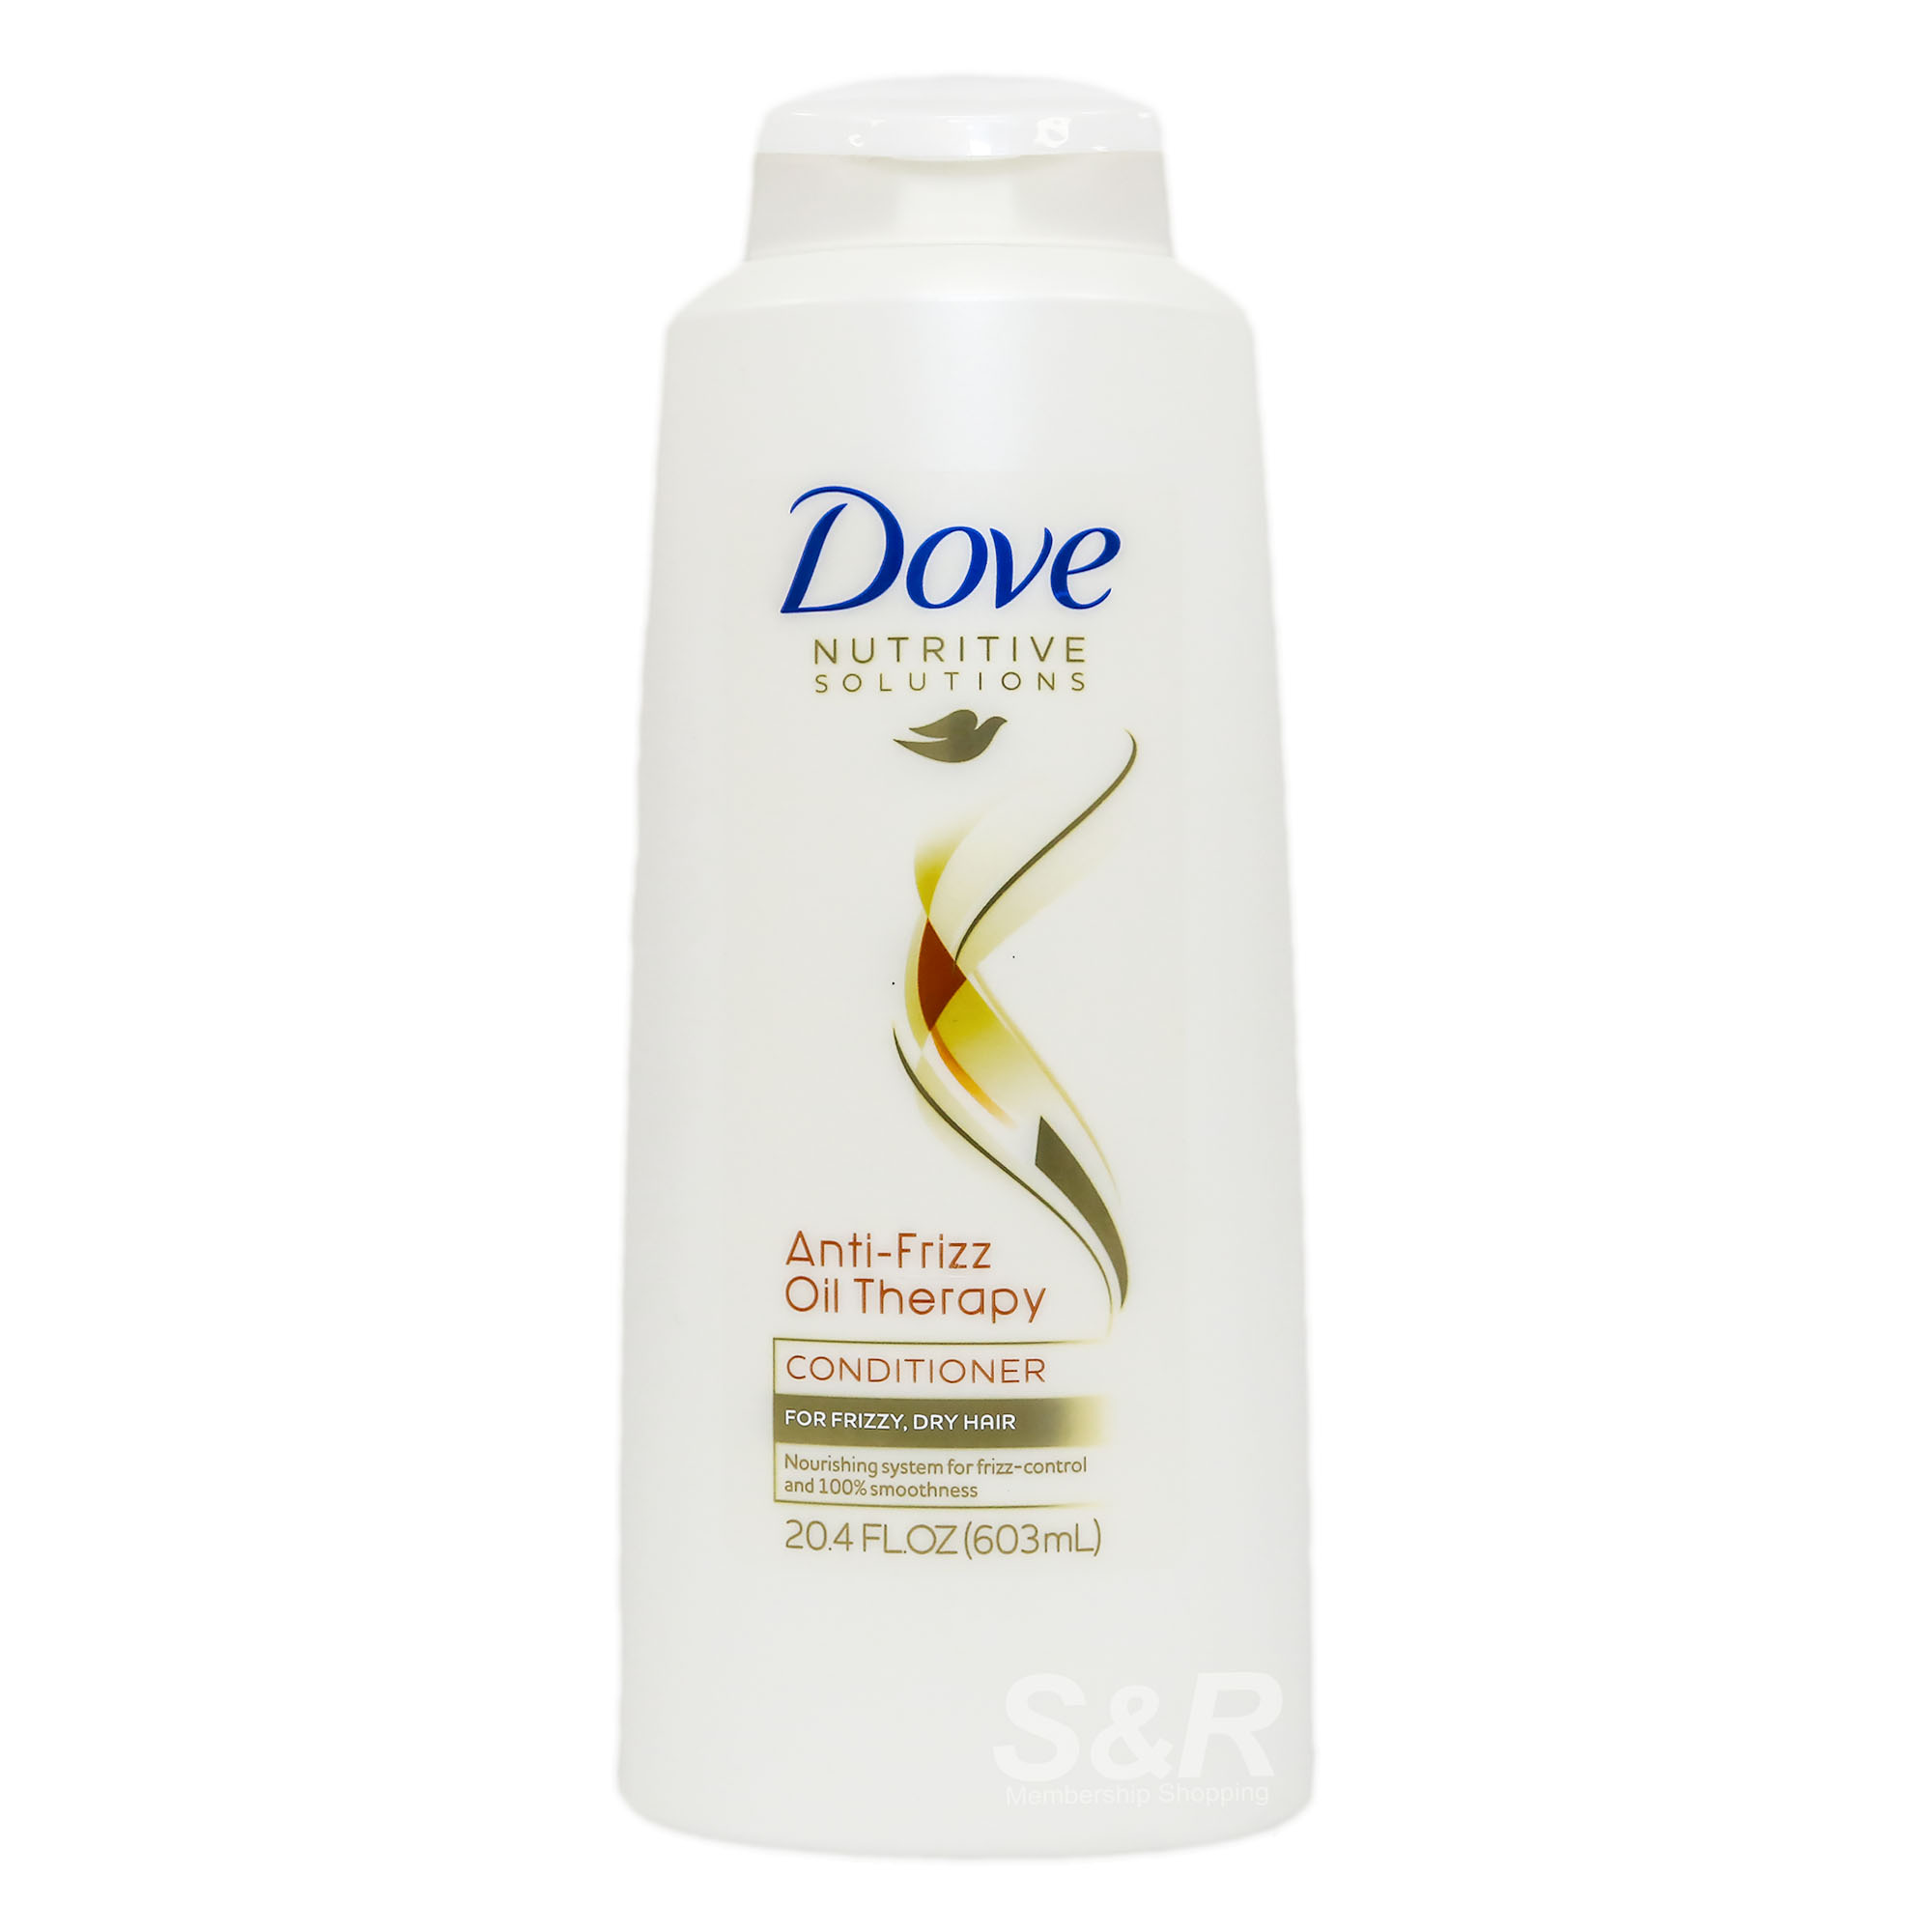 Dove Nutritive Solution Anti-Frizz Oil Therapy Conditioner 603mL